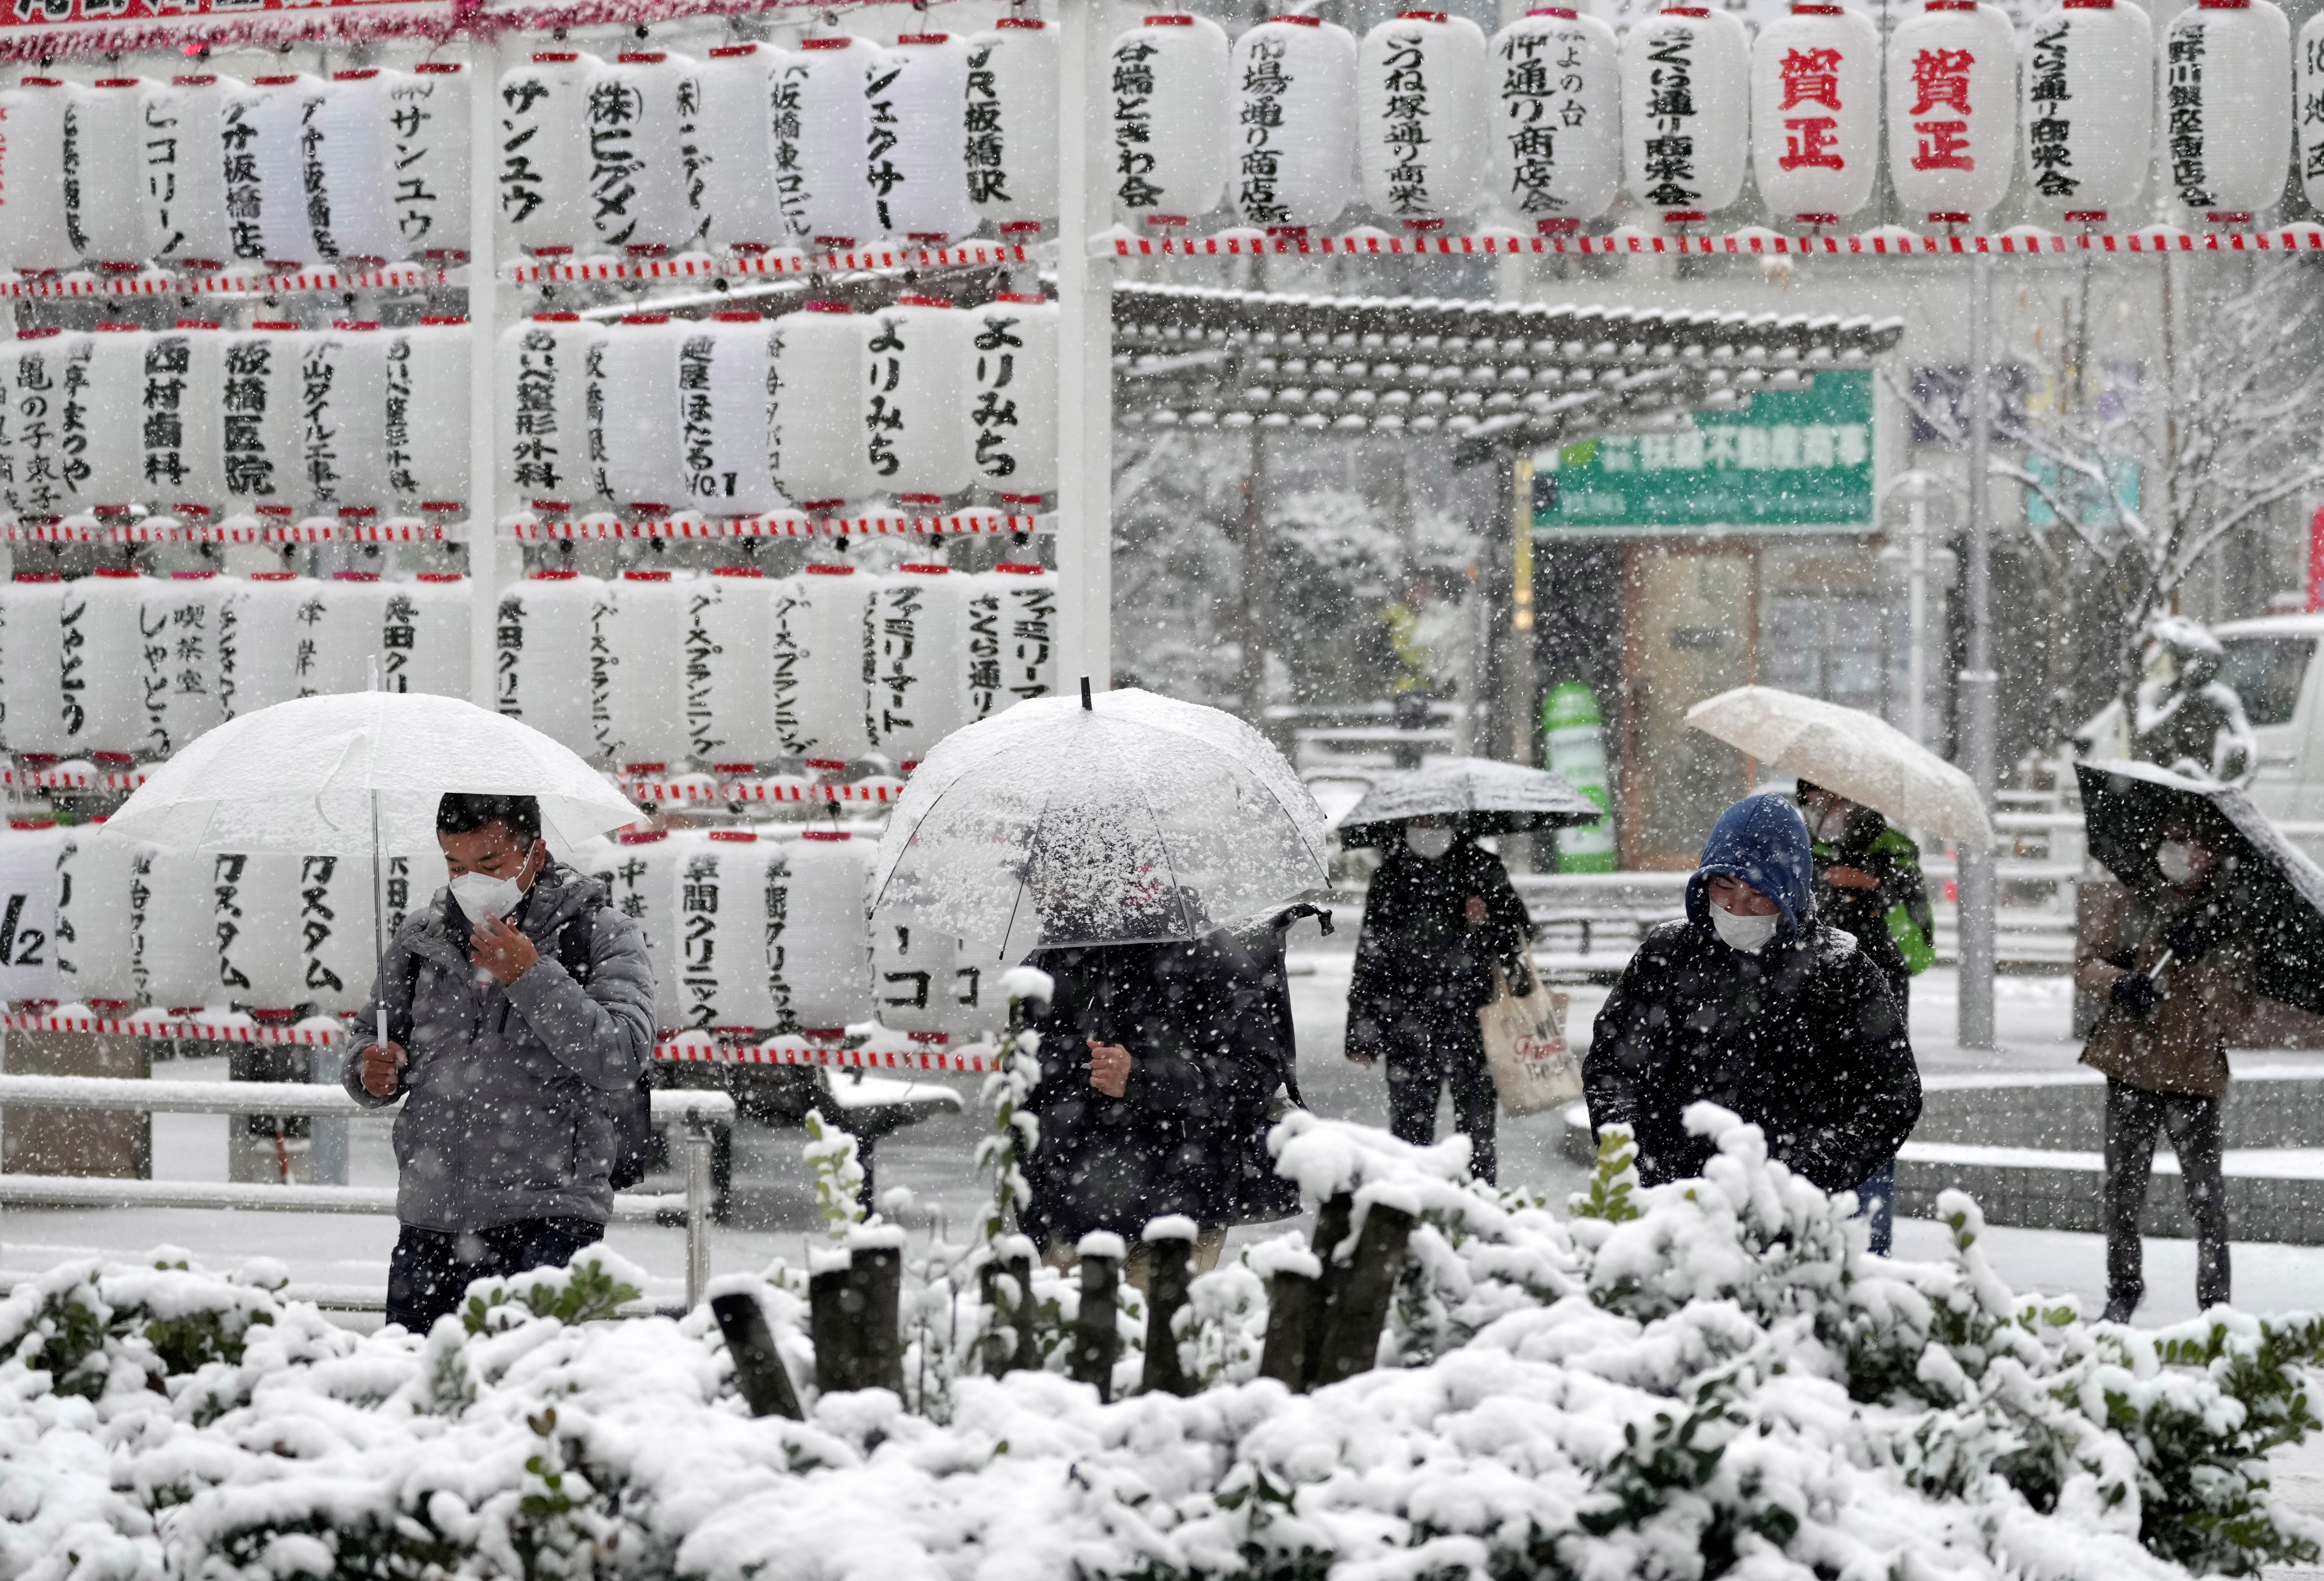 Las fuertes nevadas derribaron una torre de energía en la principal isla más septentrional de Japón, dejando cerca de 20.000 hogares sin electricidad durante la mañana de Navidad, aunque el servicio se restableció en la mayoría de las áreas más tarde ese día, de acuerdo con el Ministerio de Economía e Industria. (EFE)
